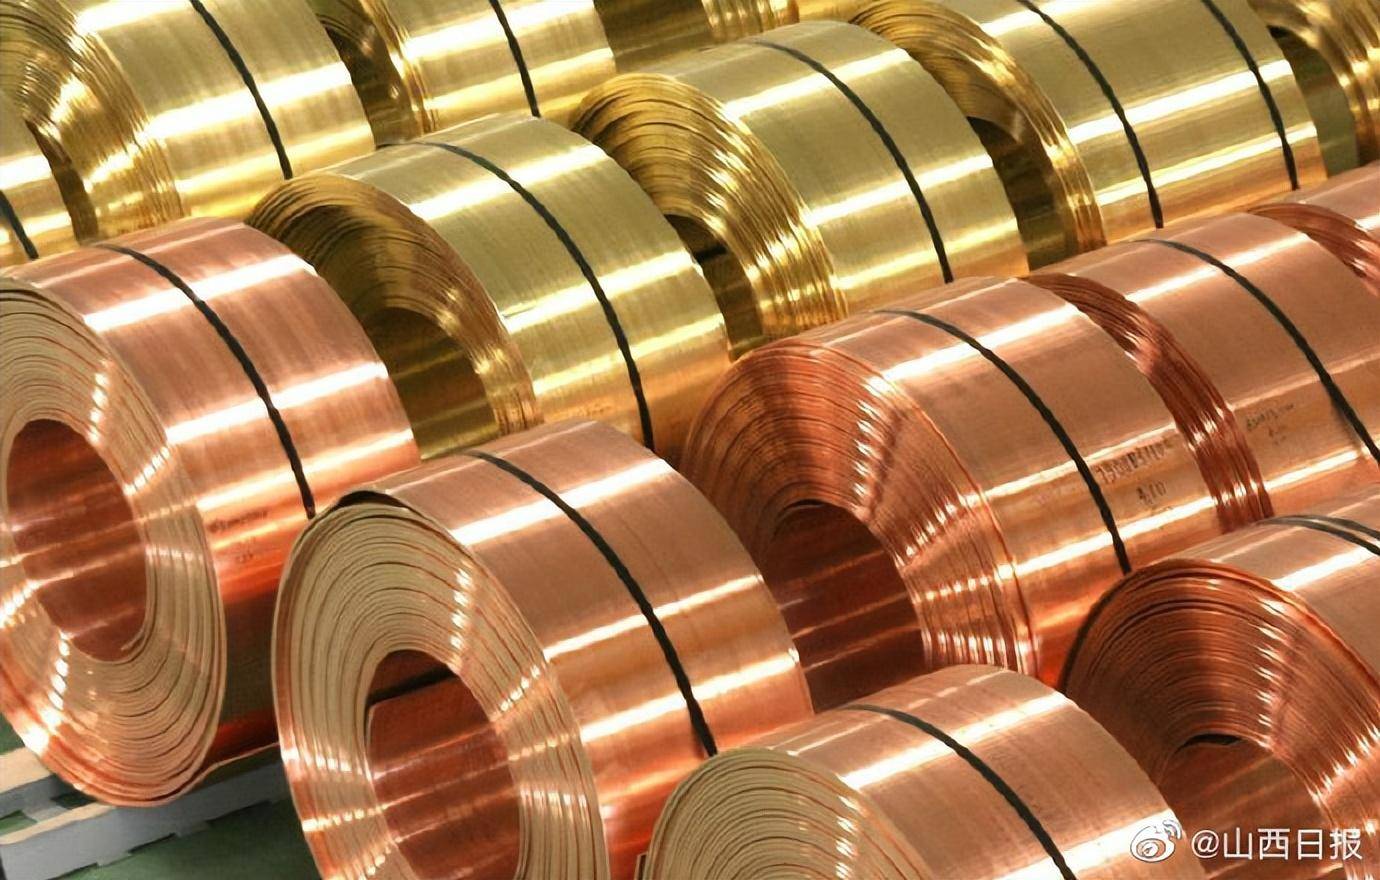 指出山西将实施培育铜基新材料产业链,大力发展再生有色金属,积极延伸